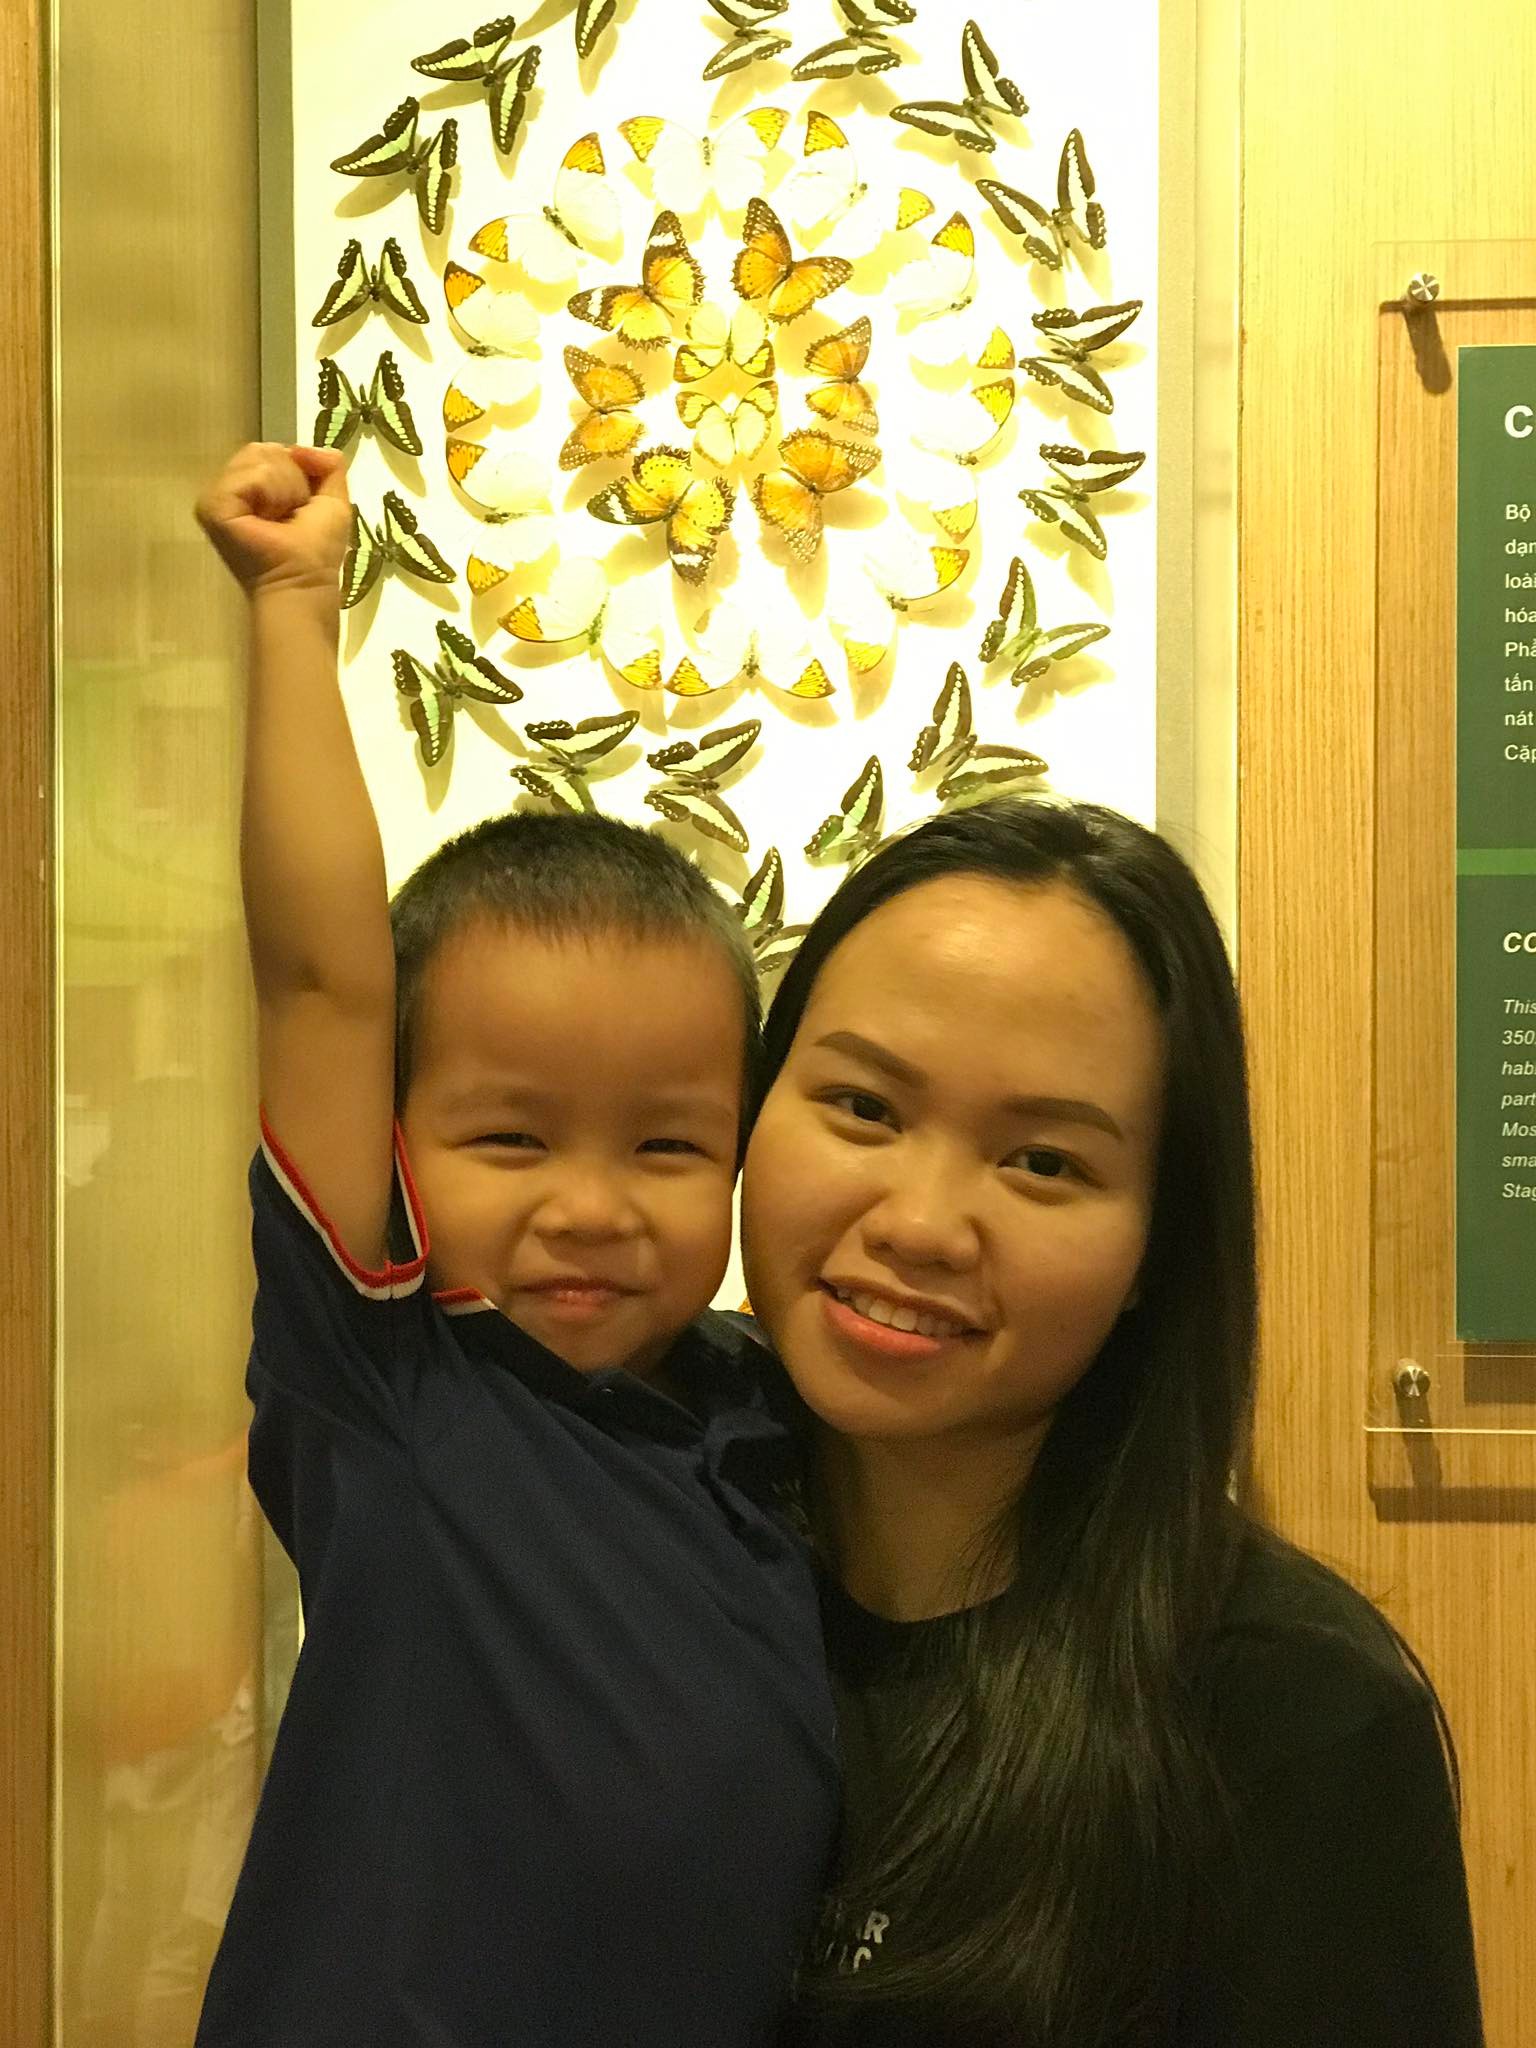 Mẹ Hà Nội chia sẻ 5 bước cùng con vượt qua cảm xúc tiêu cực, để bé hạnh phúc và tự tin hơn - Ảnh 1.